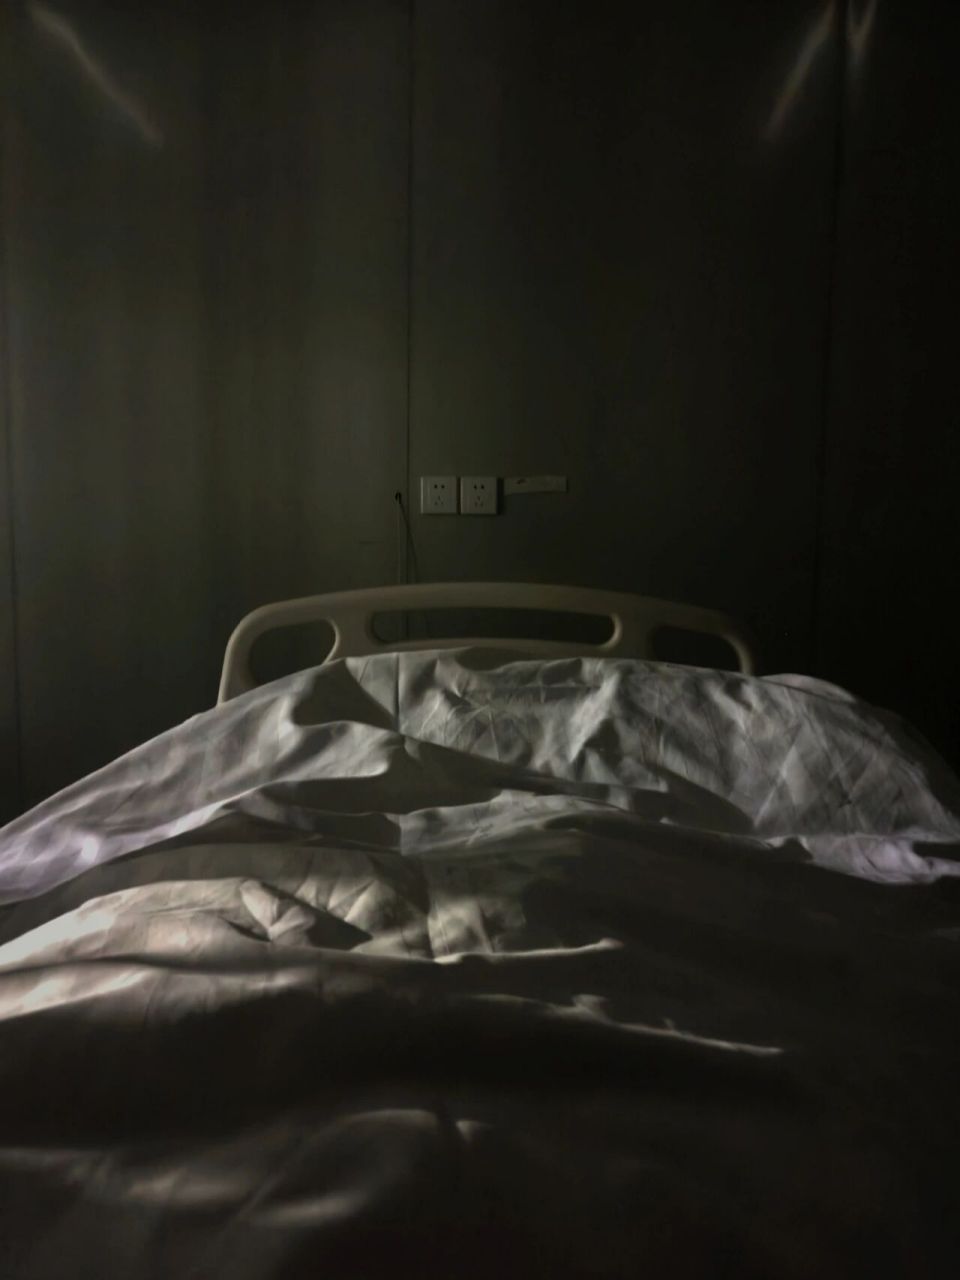 躺在病床第一视角照片图片